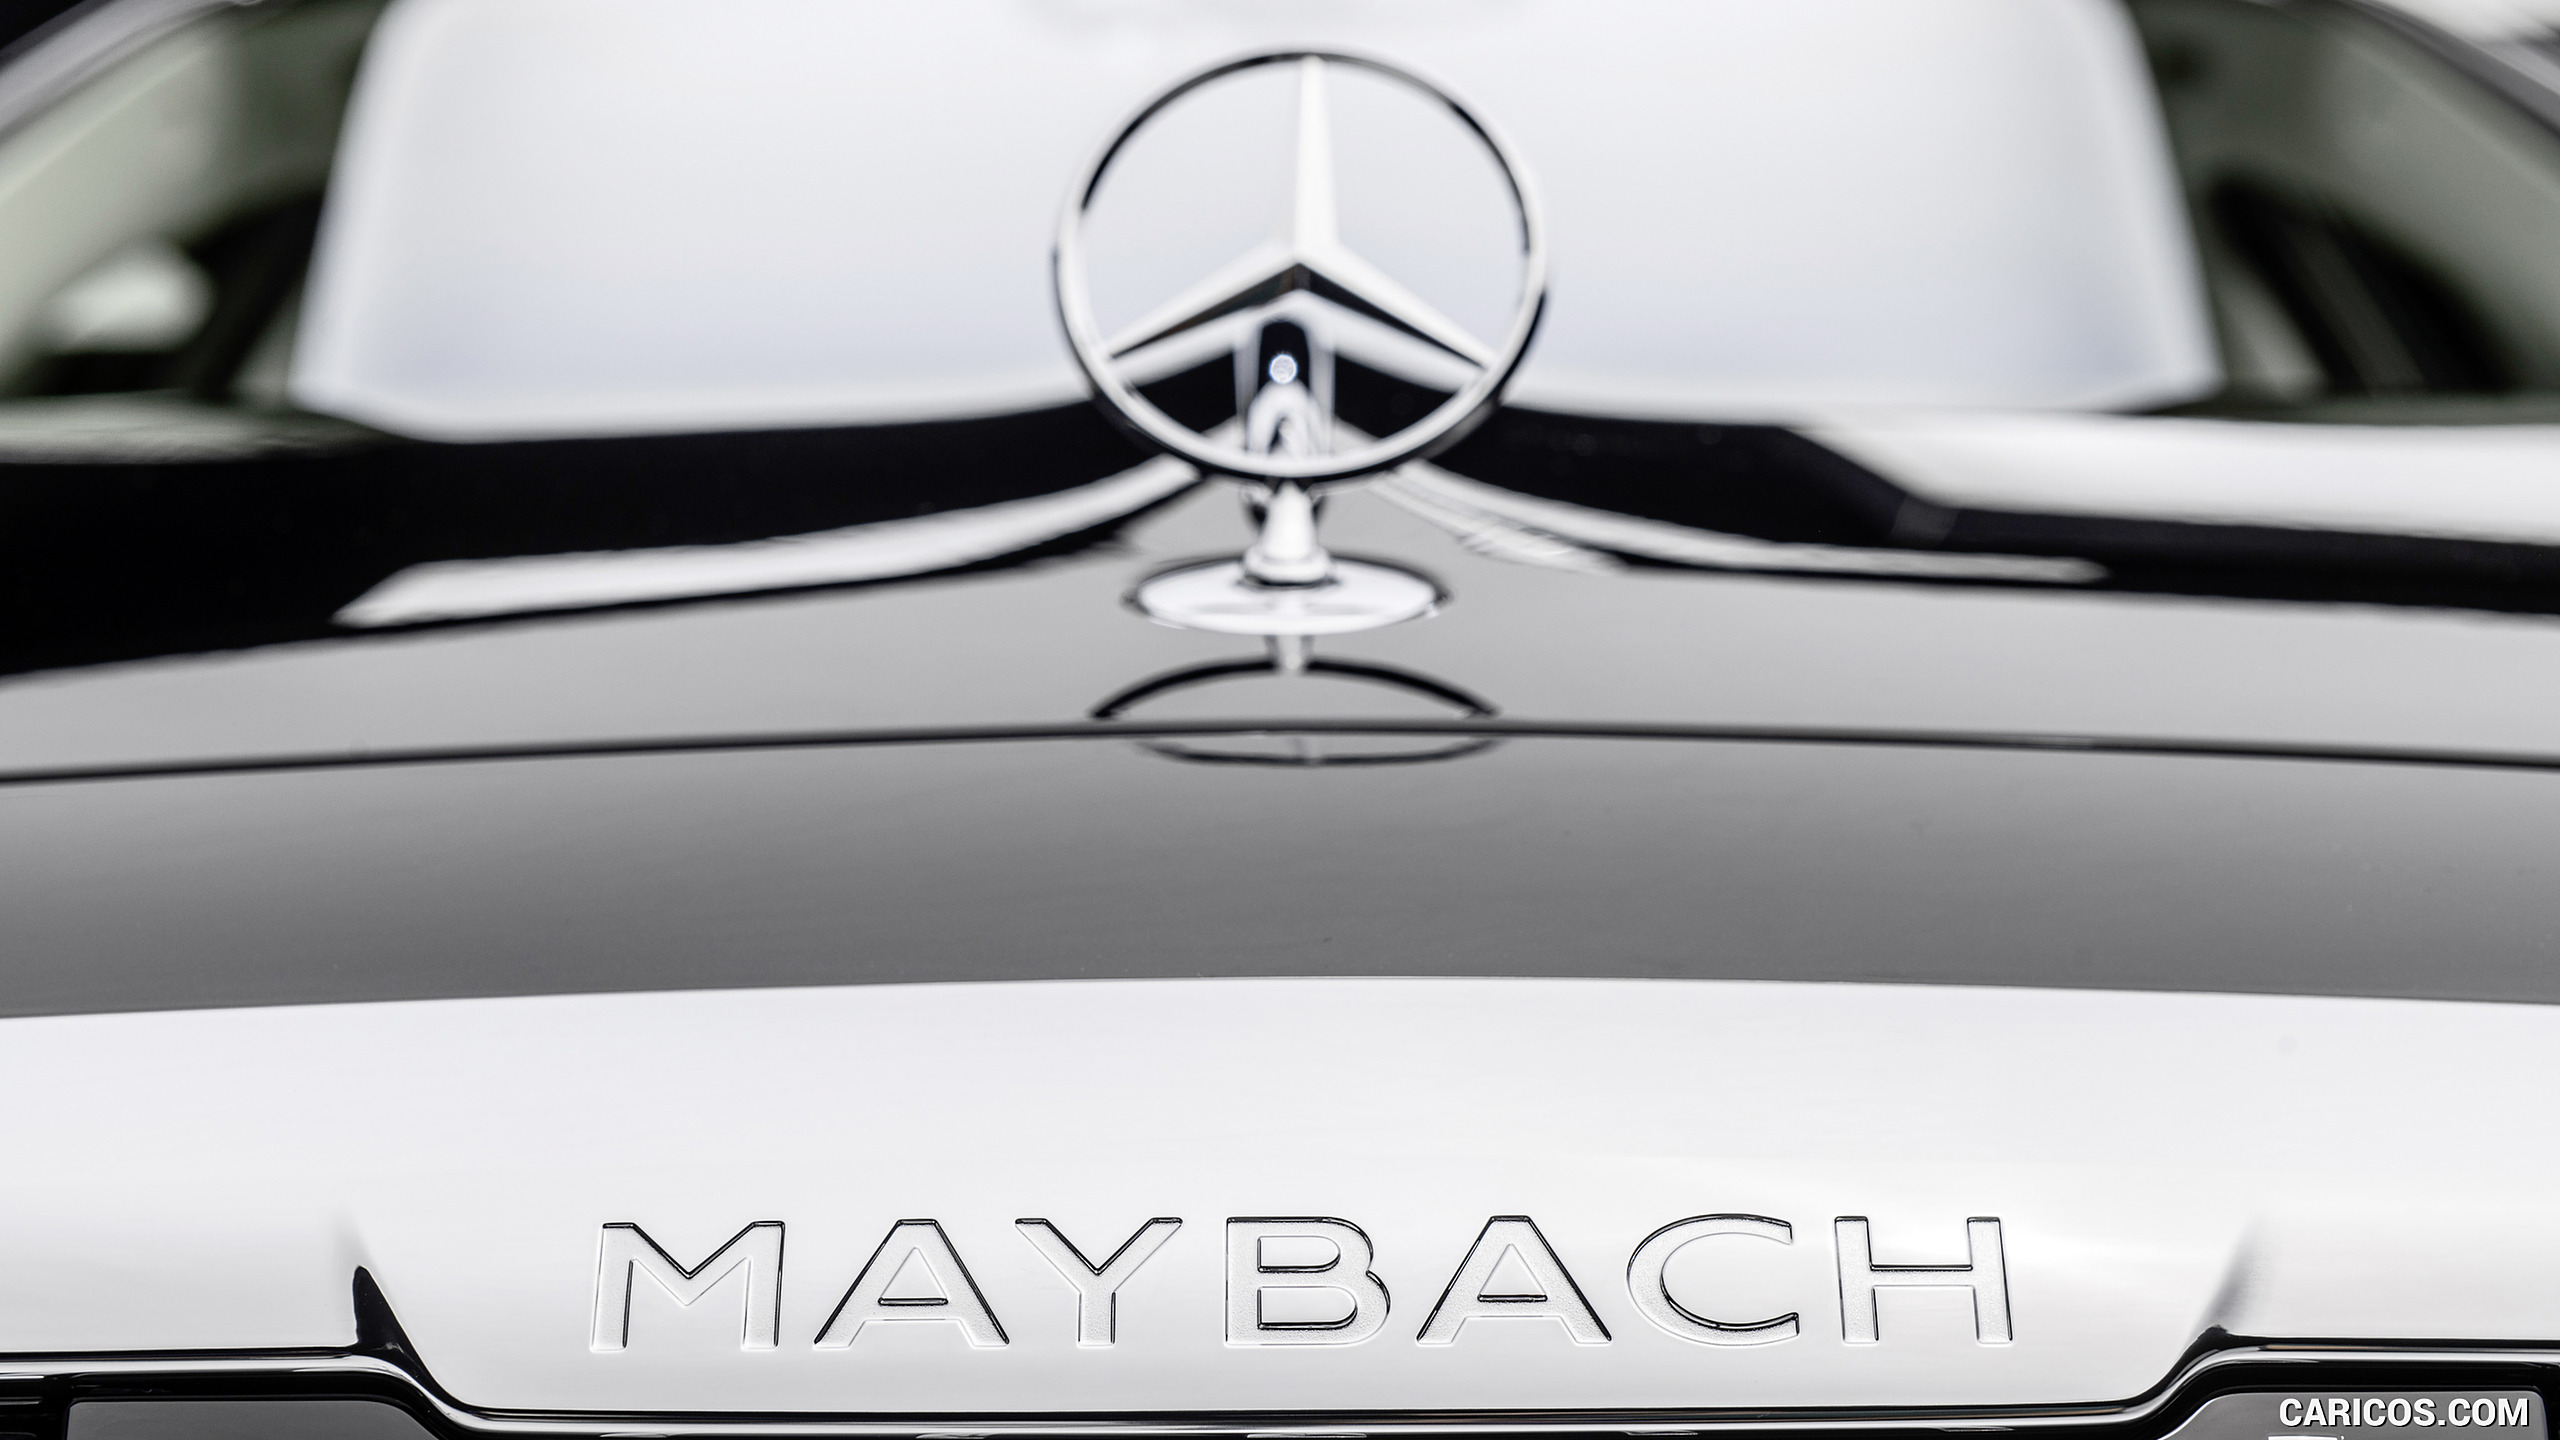 2021 Mercedes-Maybach S-Class (Color: Designo Diamond White Bright / Obsidian Black) - Badge, #91 of 157